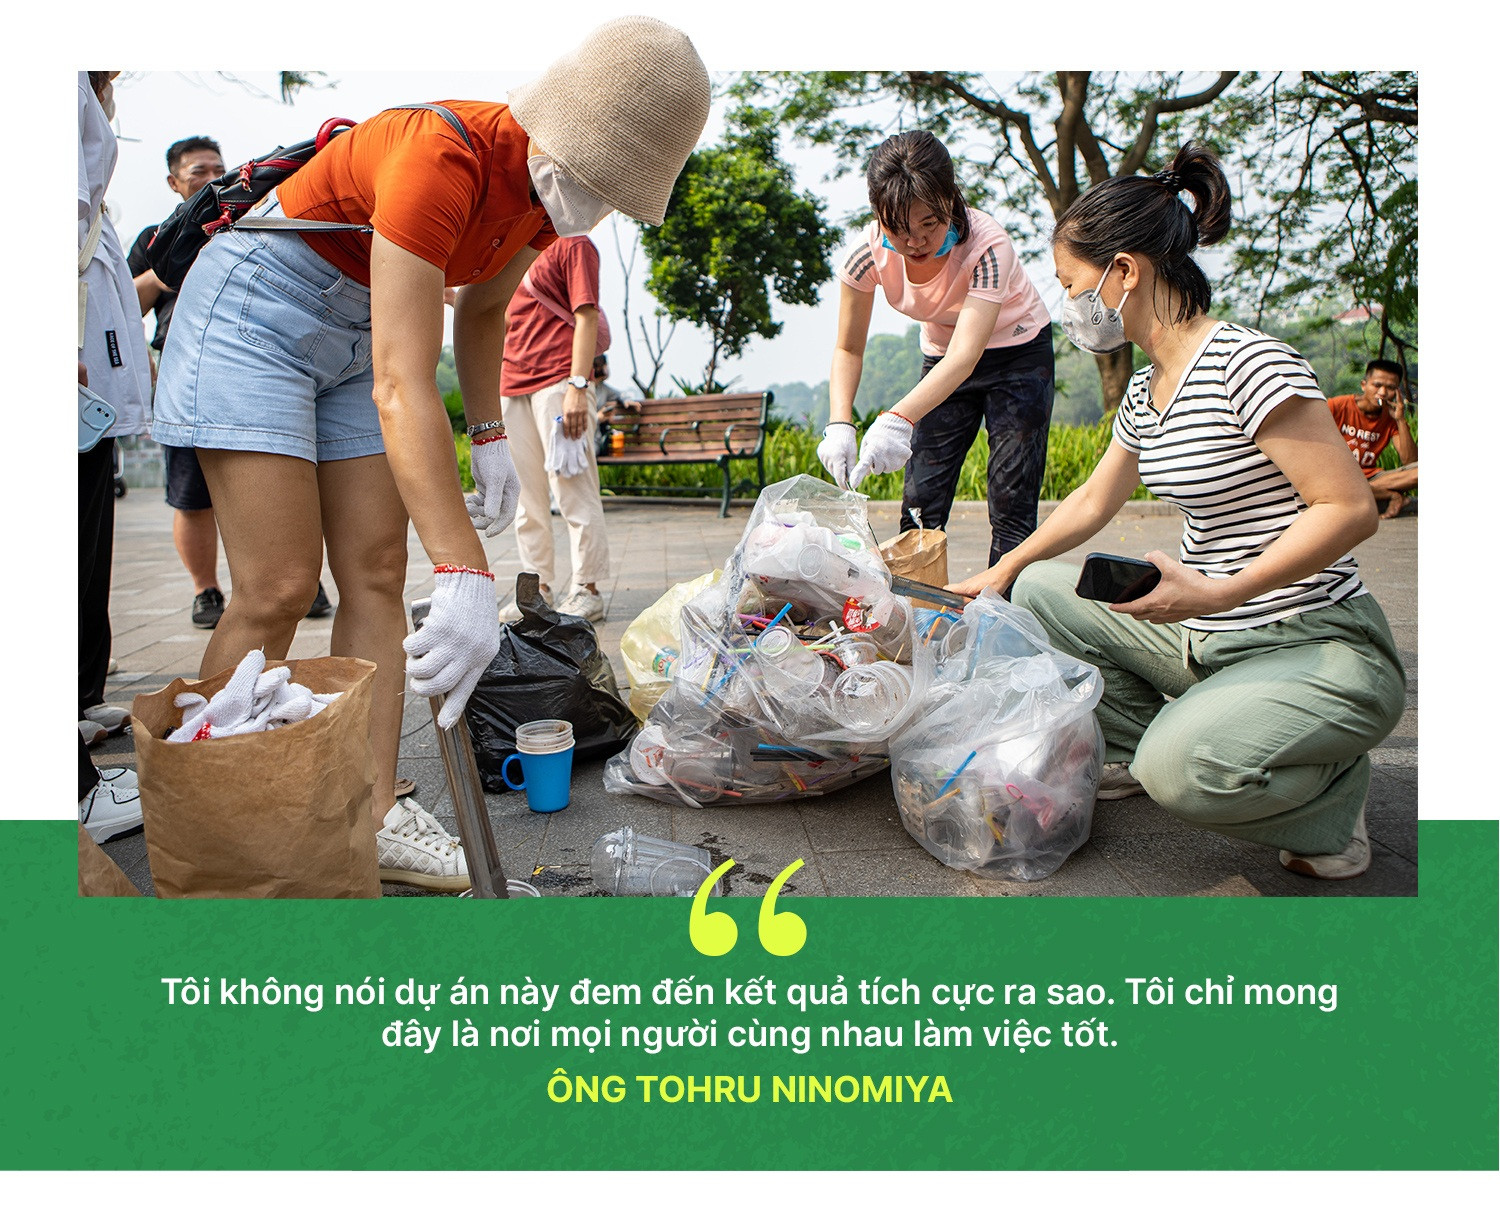 Doanh nhân Nhật Bản hơn 10 năm nhặt rác hồ Gươm để trả ơn Việt Nam - 24